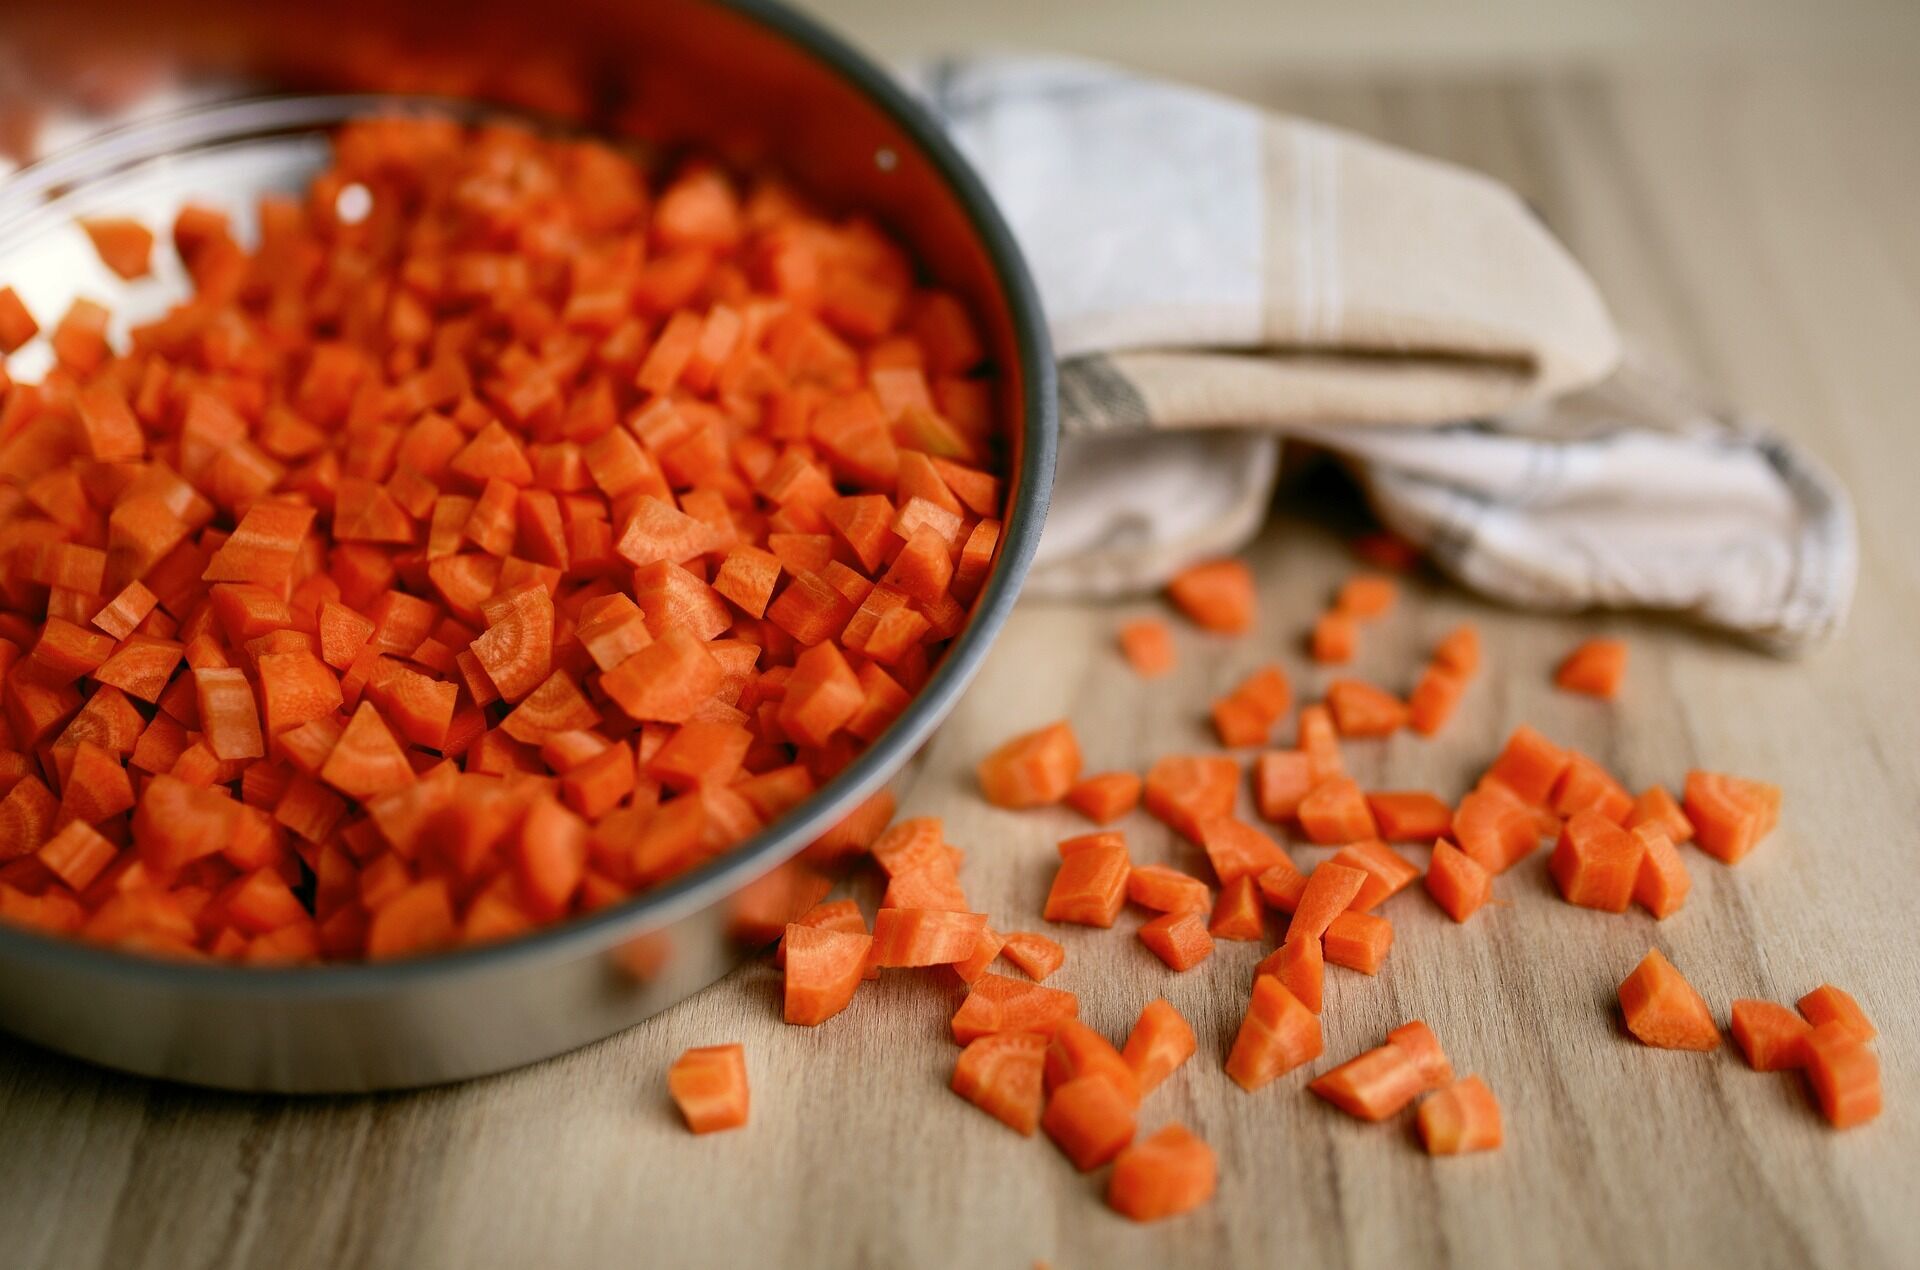 Морковь на кухне быстро вянет и покрывается плесенью? Вот как продлить ей жизнь на несколько недель и даже месяцев